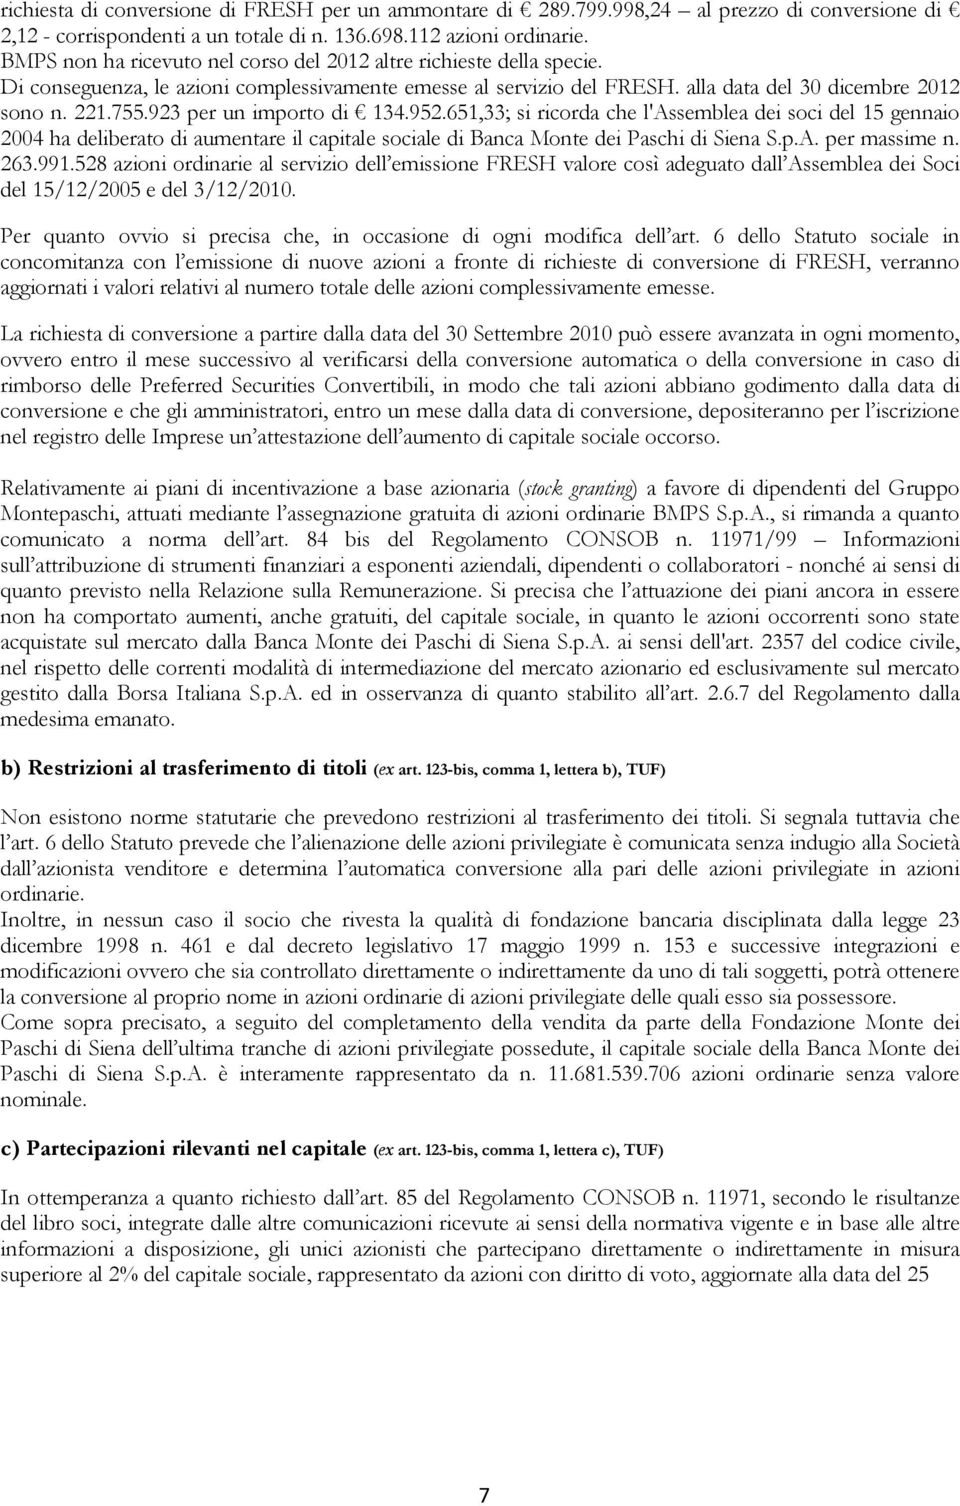 923 per un importo di 134.952.651,33; si ricorda che l'assemblea dei soci del 15 gennaio 2004 ha deliberato di aumentare il capitale sociale di Banca Monte dei Paschi di Siena S.p.A. per massime n.